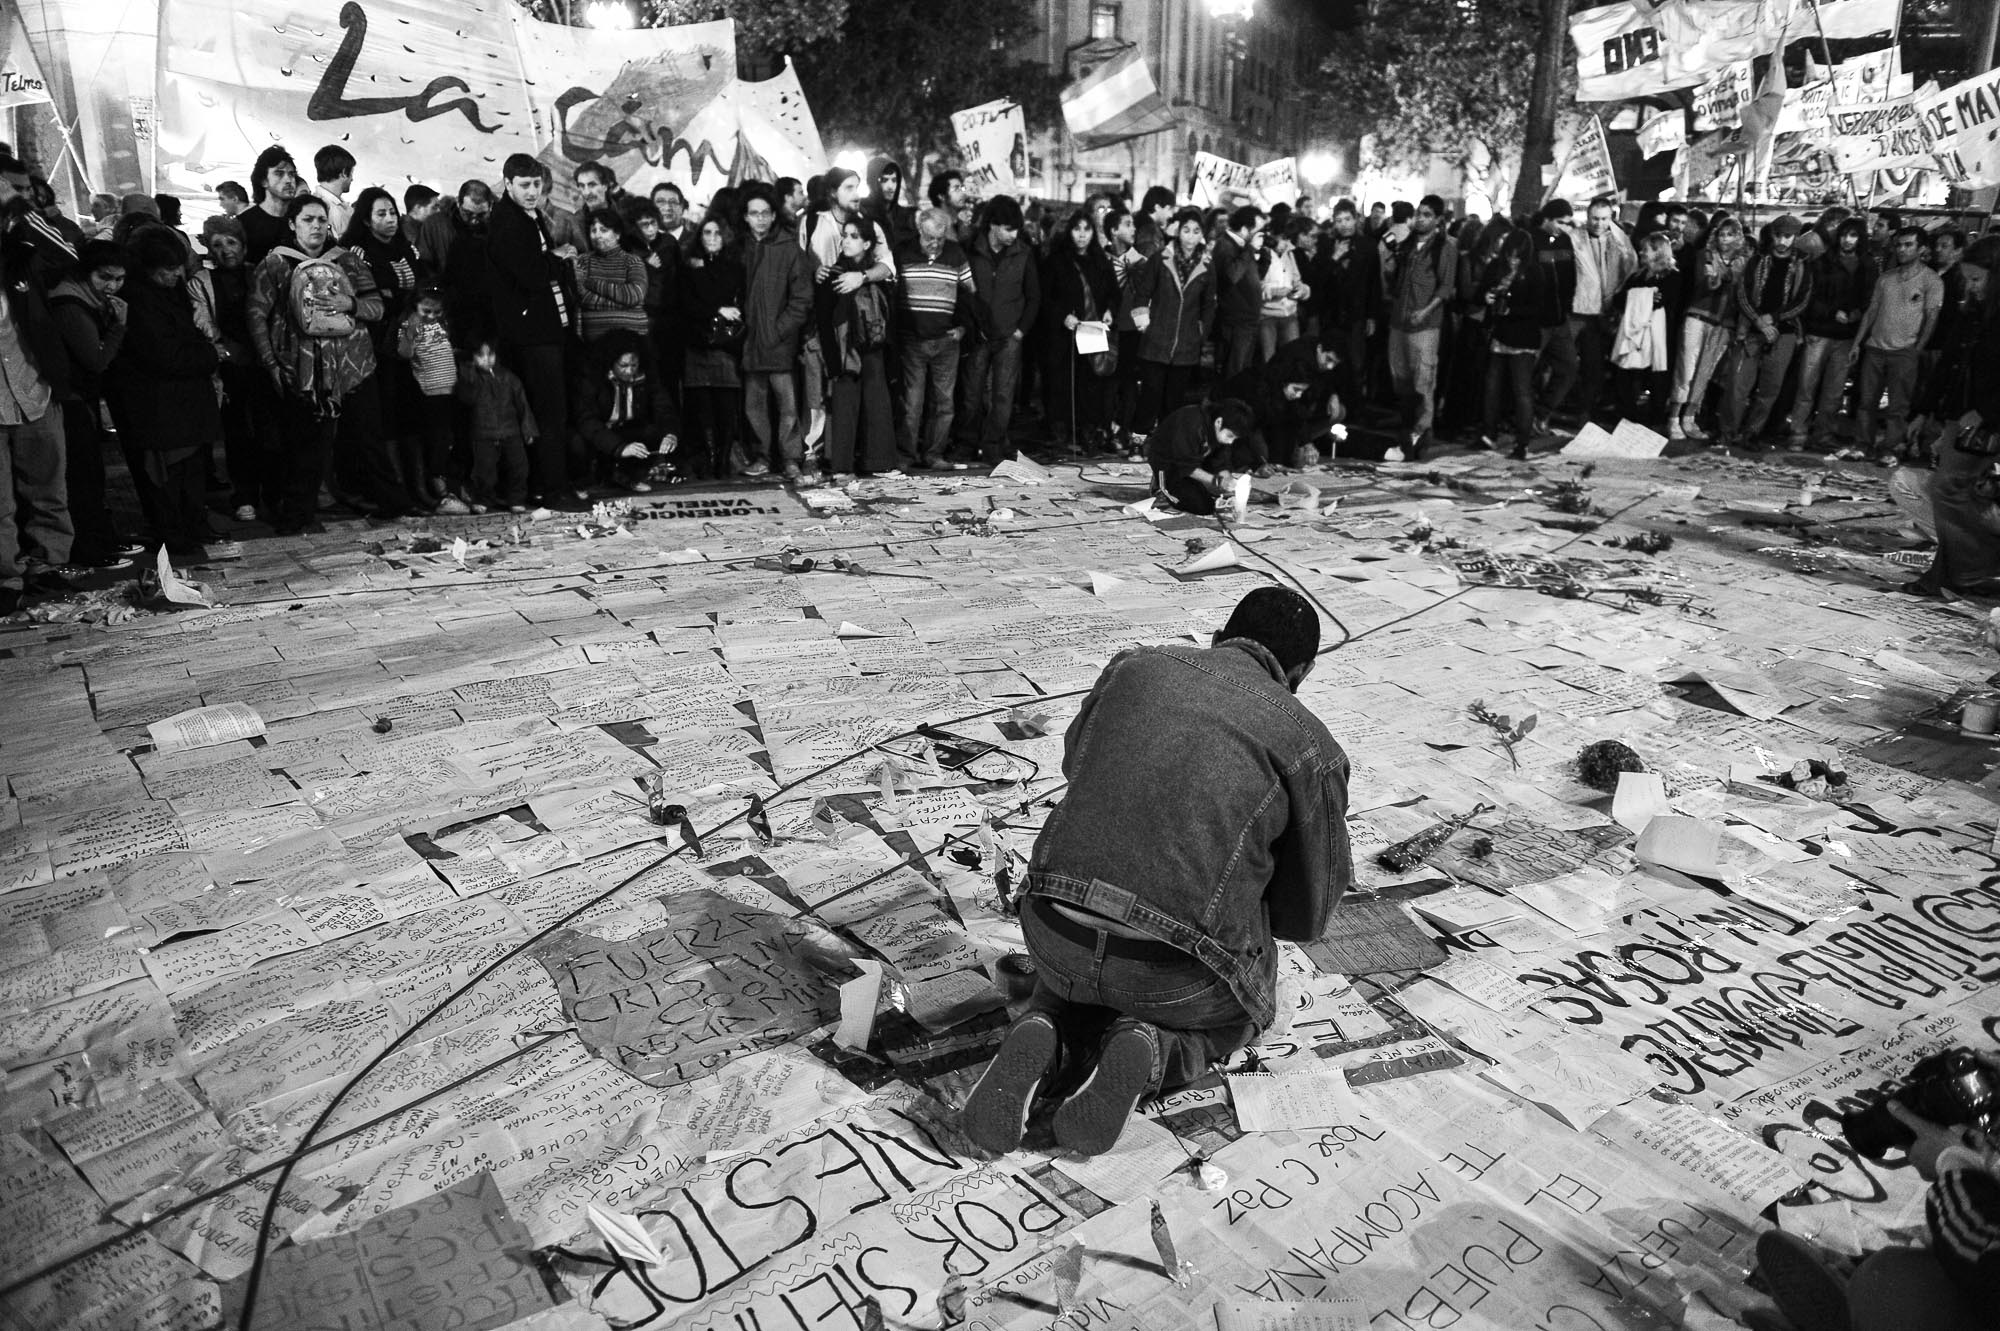 un hombre acomoda cientos de carteles con mensajes en el suelo rodeado de gente